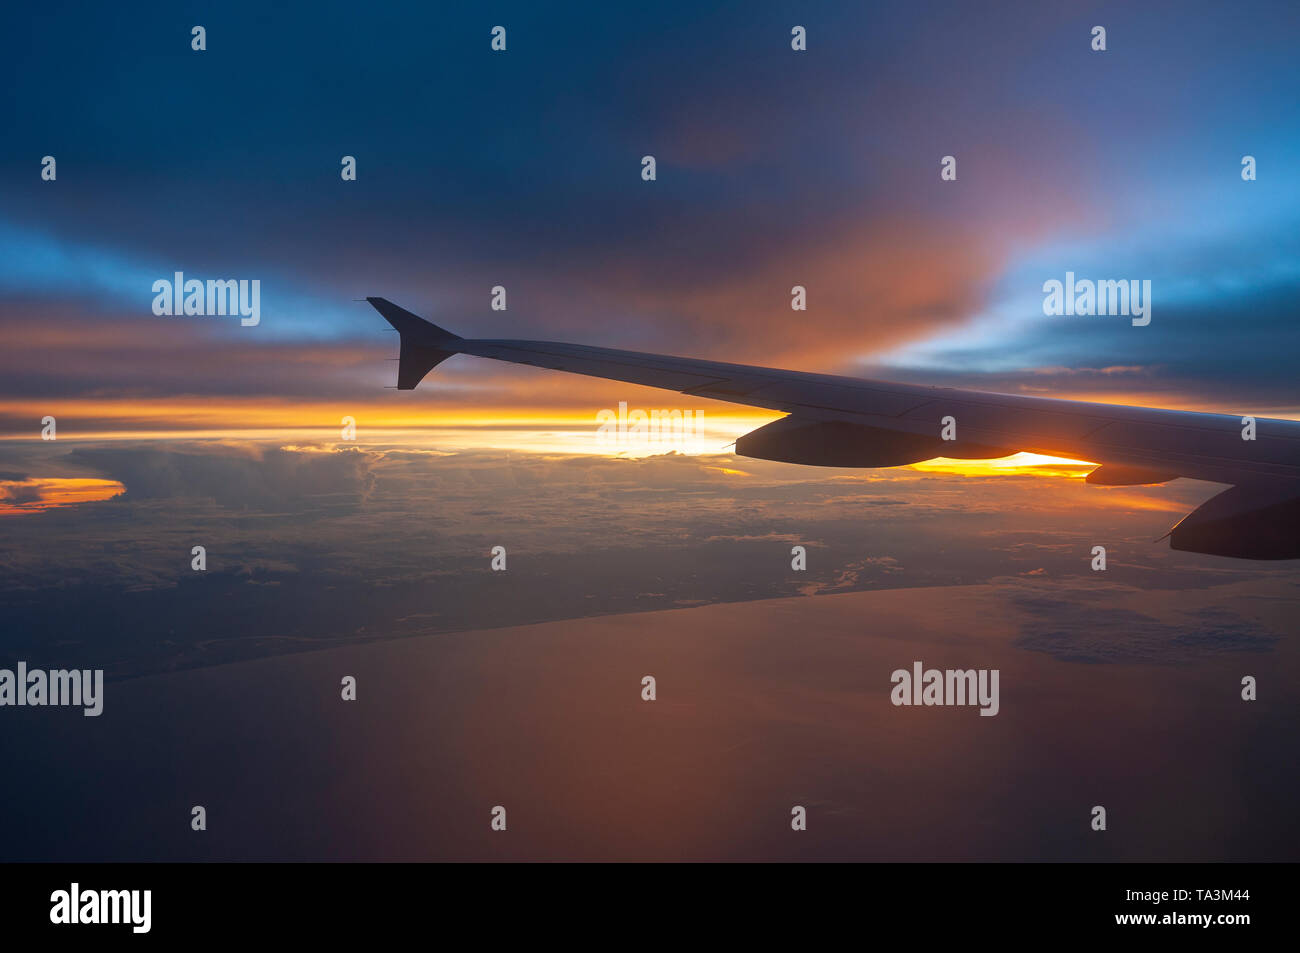 Vue aérienne par le biais de la fenêtre d'un avion au coucher du soleil avec une aile d'avion. Concept de voyages, transports et les vols long courrier. Banque D'Images